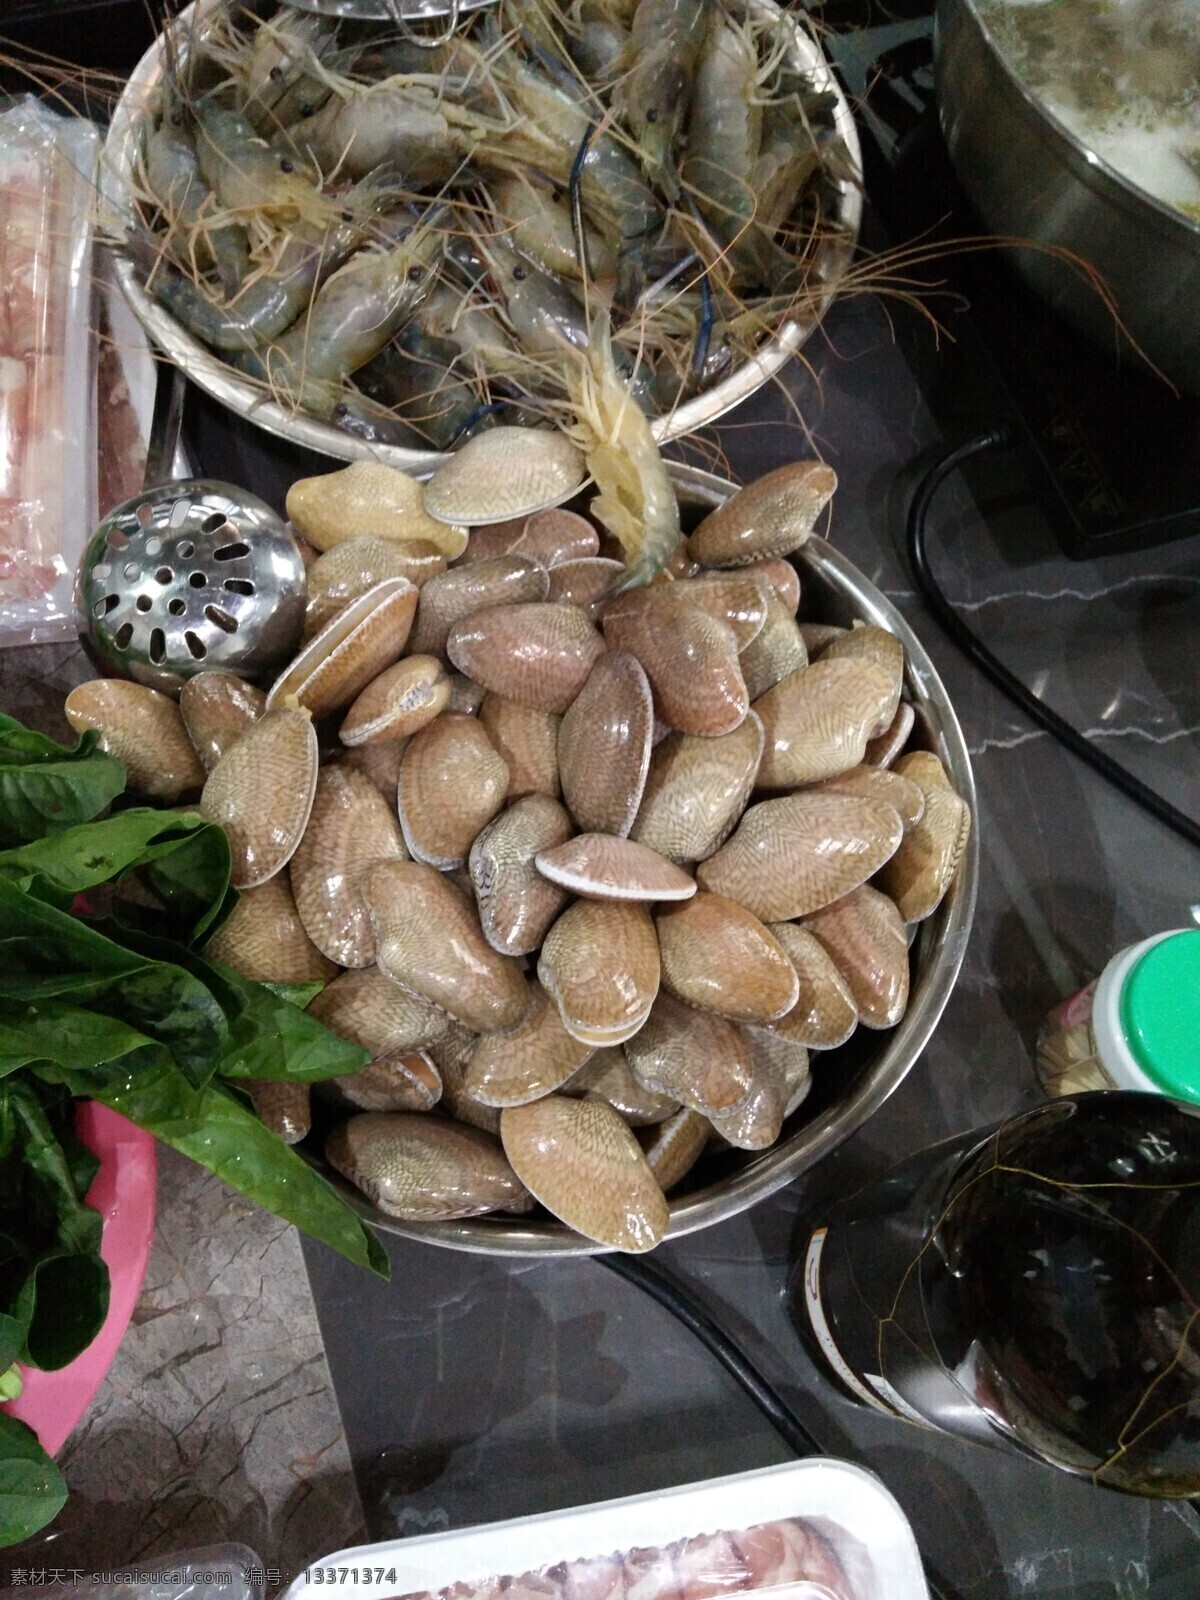 花甲图片 扇贝 海鲜 贝类 贝壳 扇贝肉 贝类拼盘 菜式 生活百科 生活素材